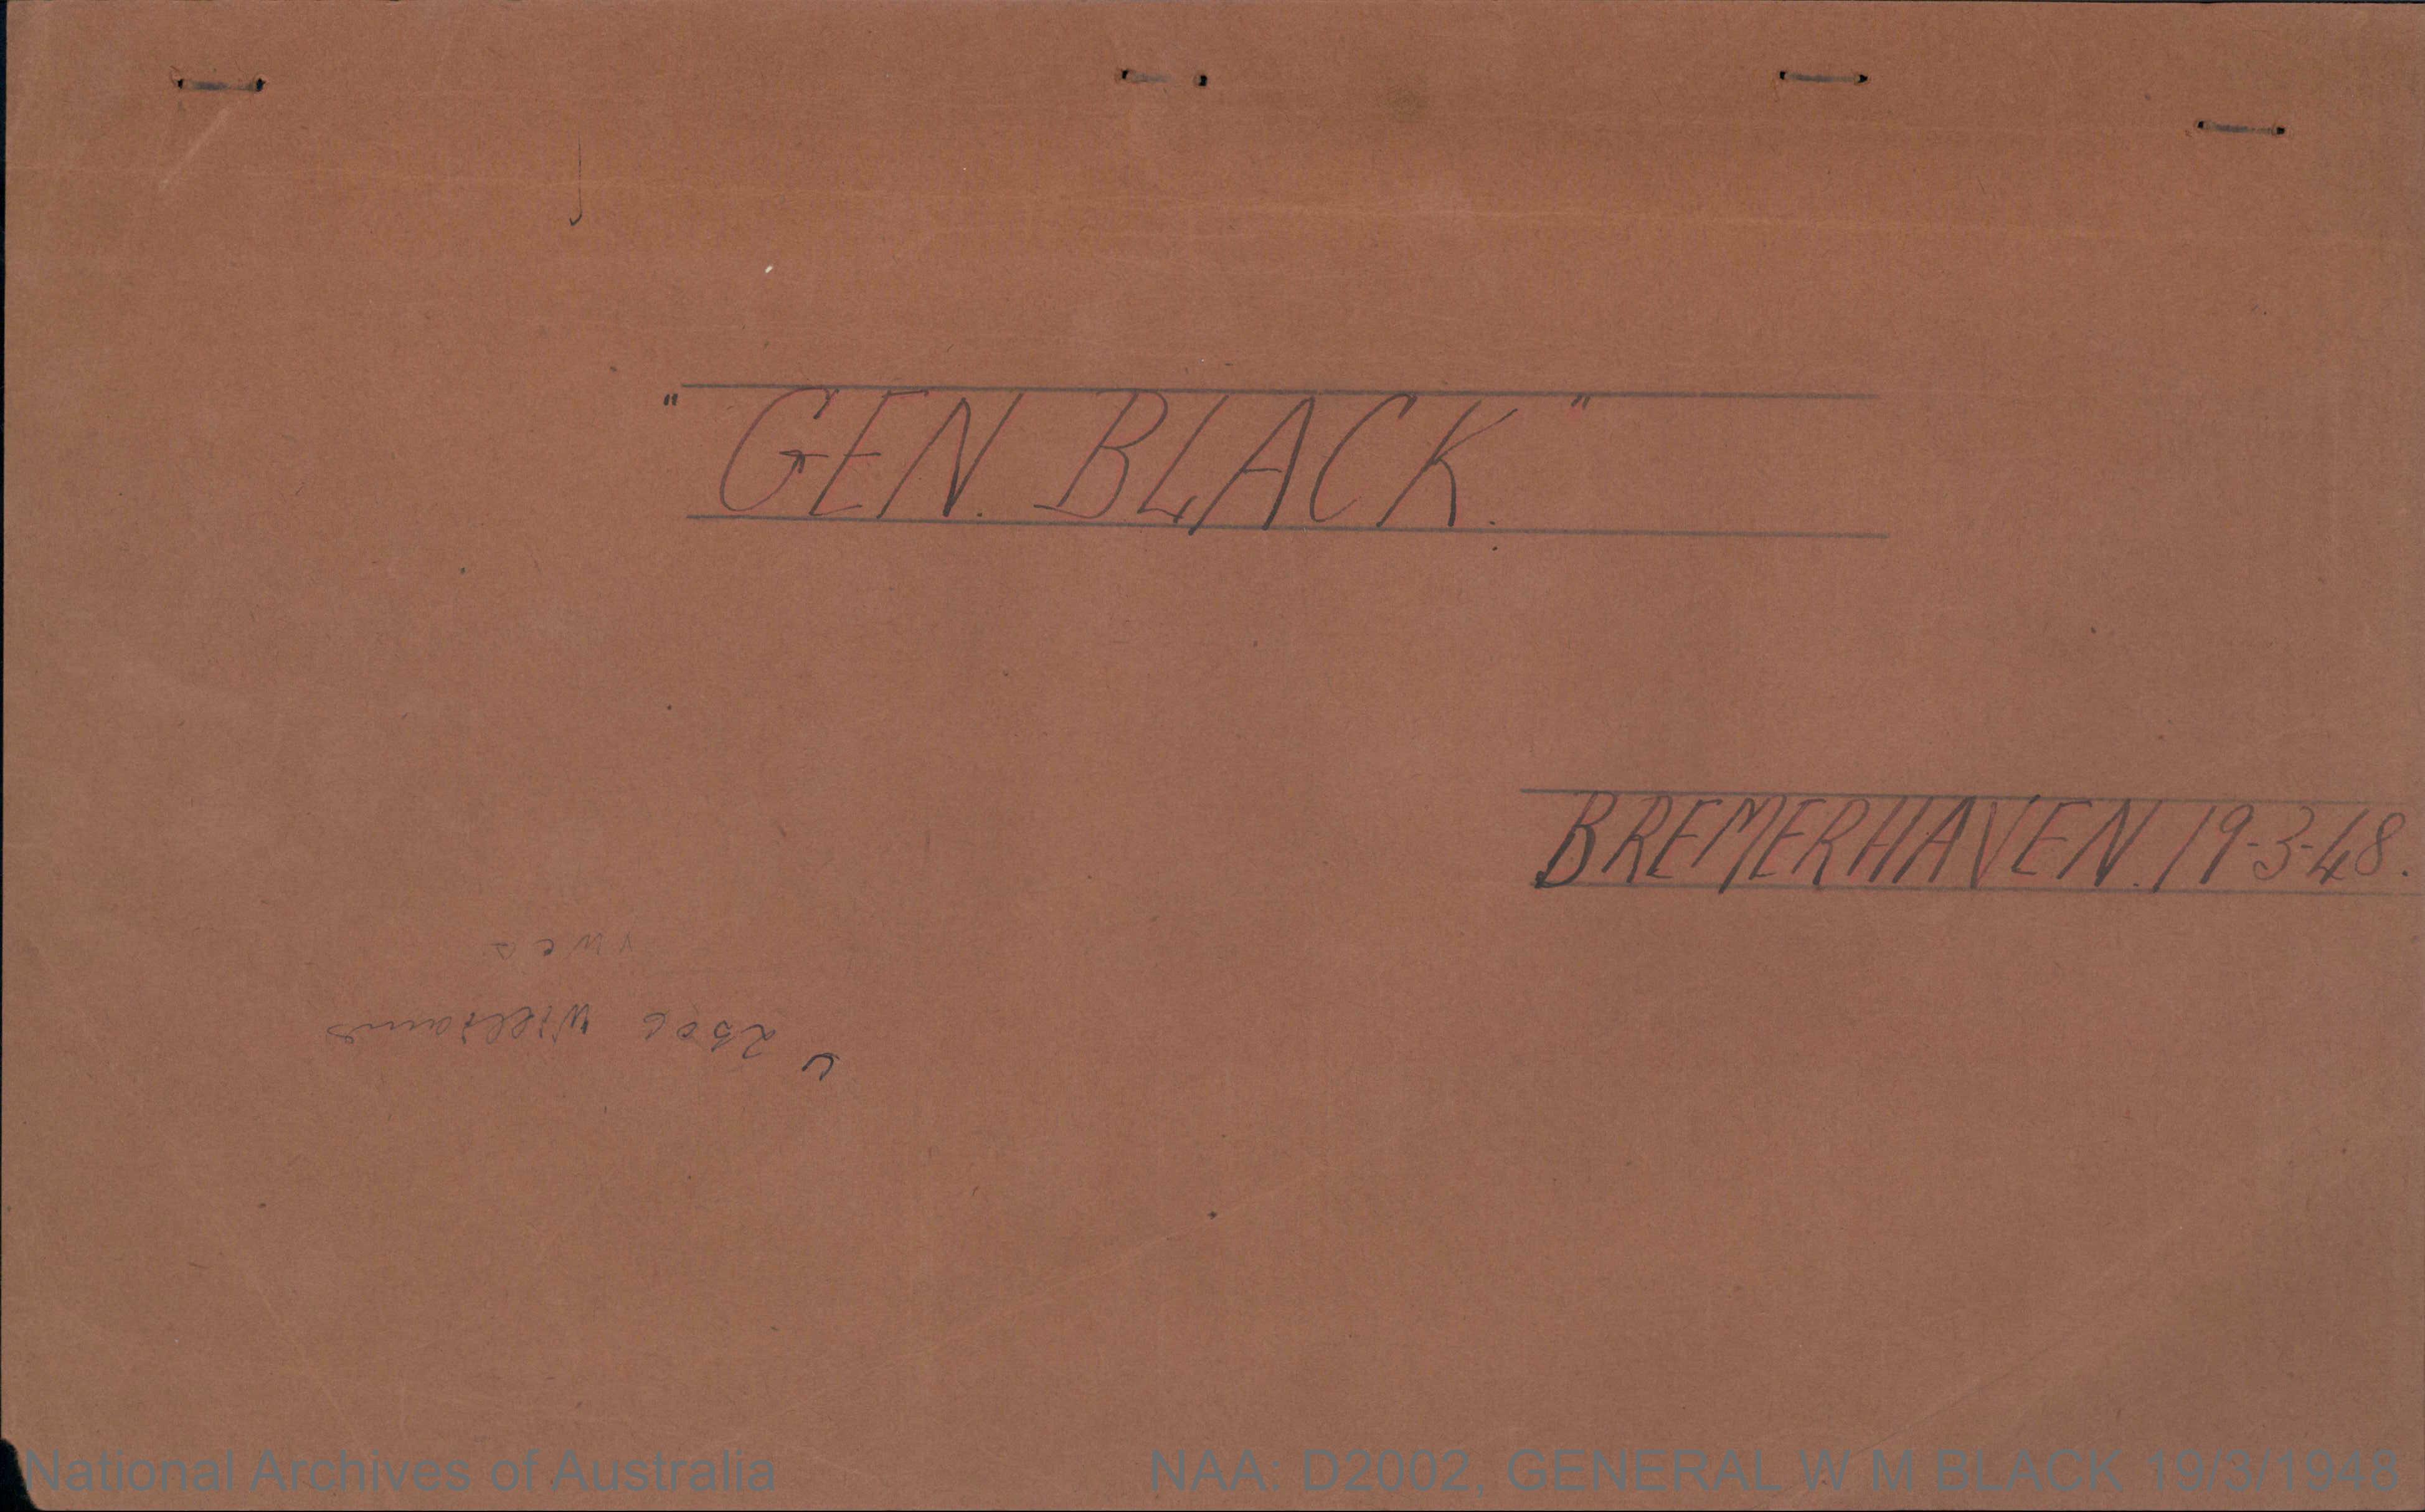 NAA: D2002, GENERAL W M BLACK 19/3/1948